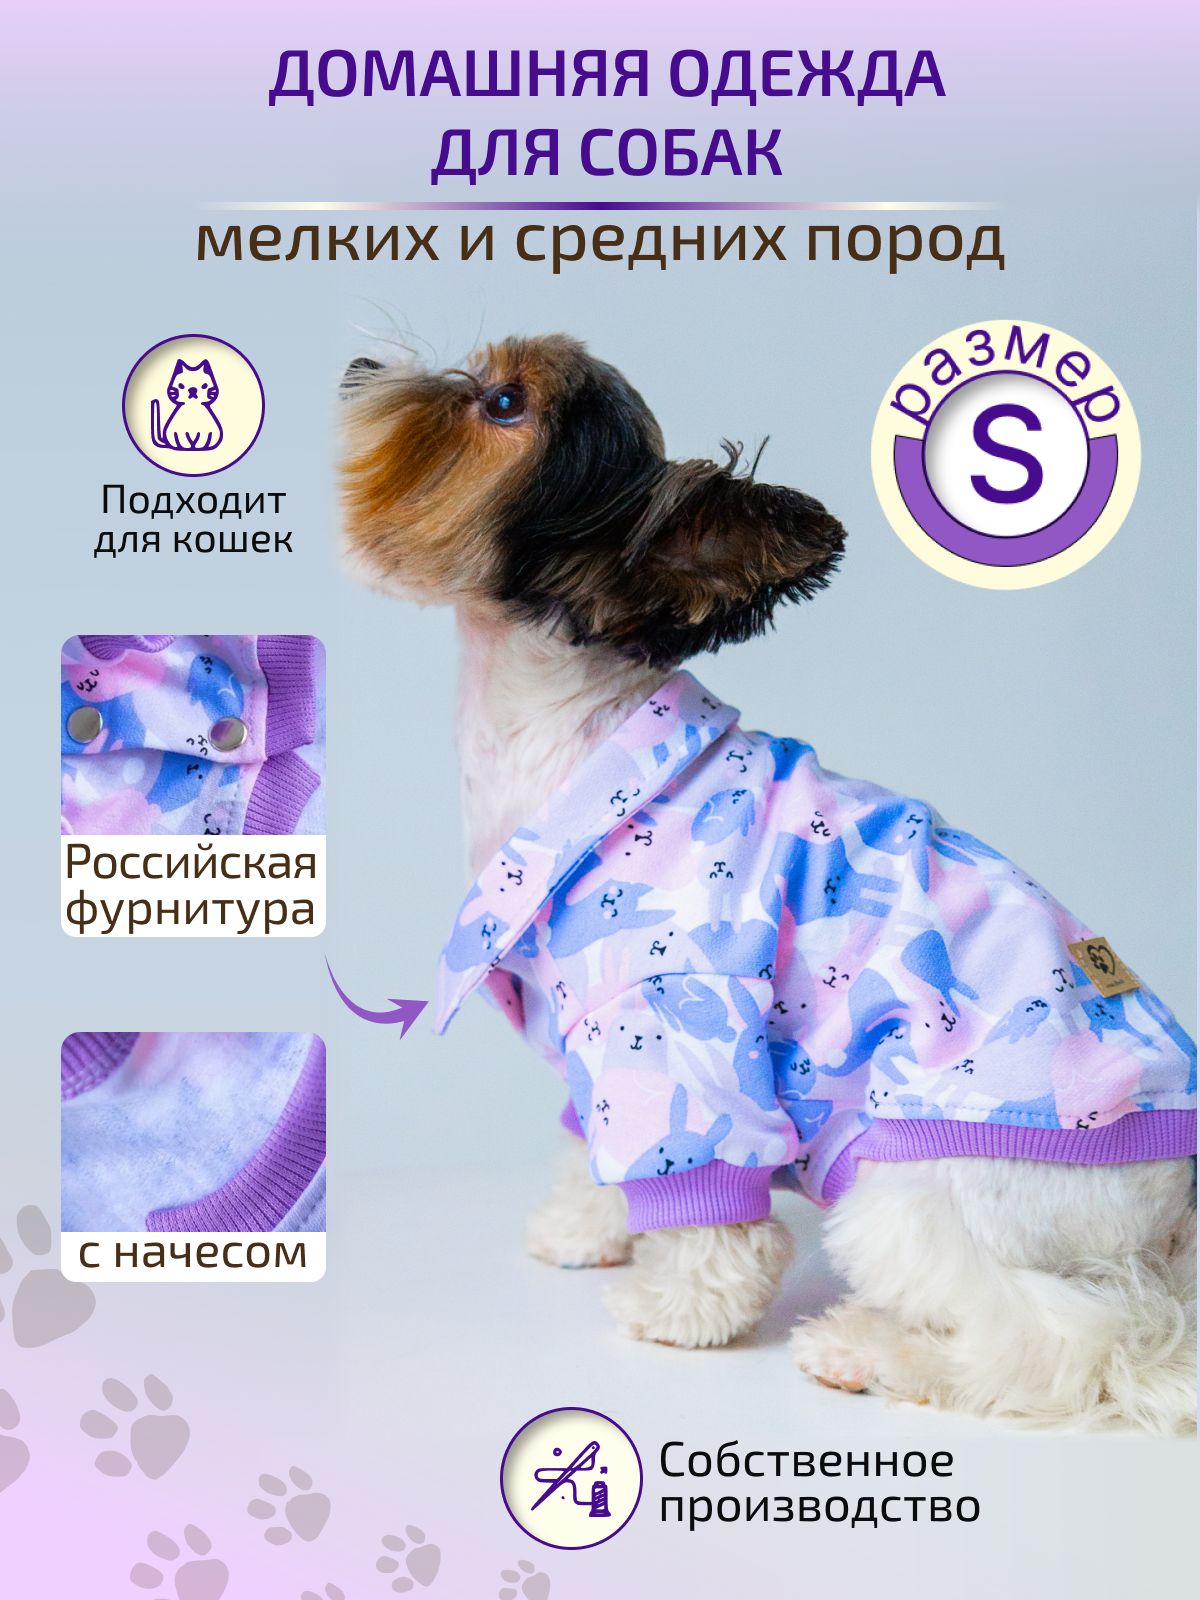 Сообщество «Выкройки для собак в pdf формате» ВКонтакте — публичная страница, Новошахтинск